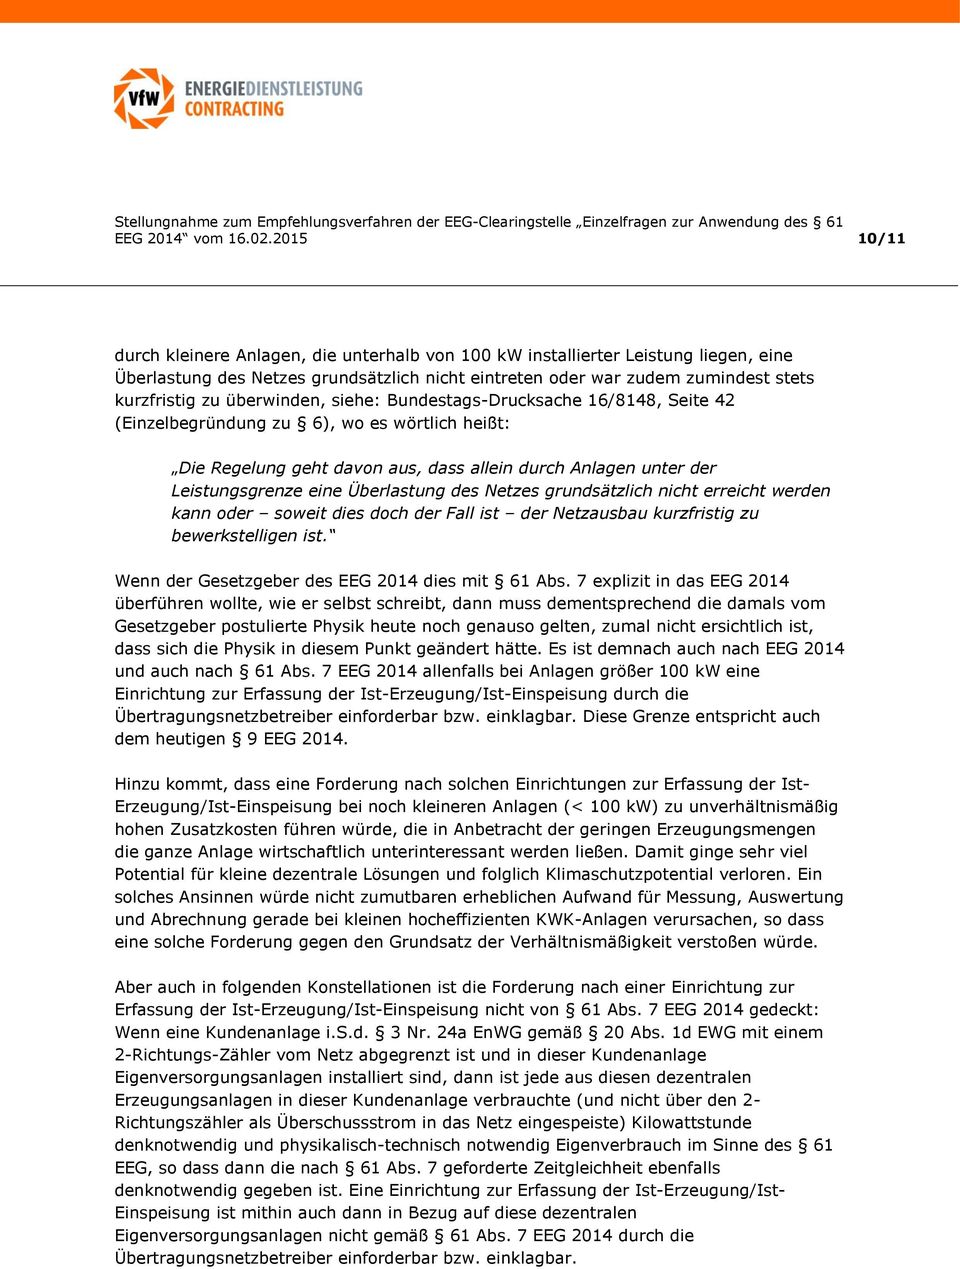 überwinden, siehe: Bundestags-Drucksache 16/8148, Seite 42 (Einzelbegründung zu 6), wo es wörtlich heißt: Die Regelung geht davon aus, dass allein durch Anlagen unter der Leistungsgrenze eine